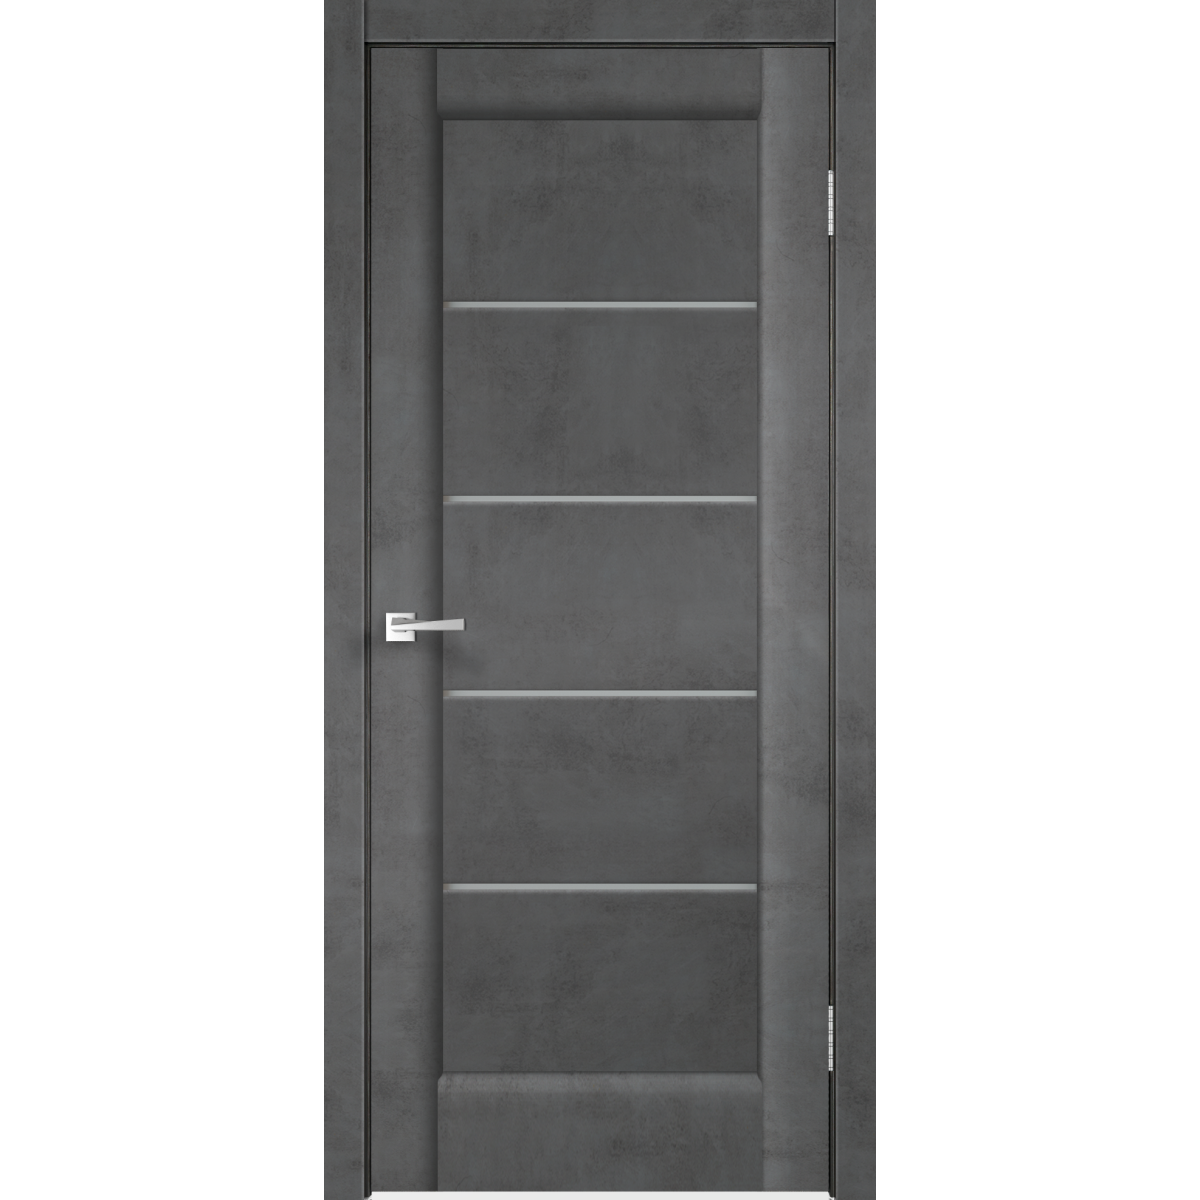 Дверь межкомнатная остеклённая «Сохо», 80x200 см, ПВХ, цвет лофт тёмный, с фурнитурой